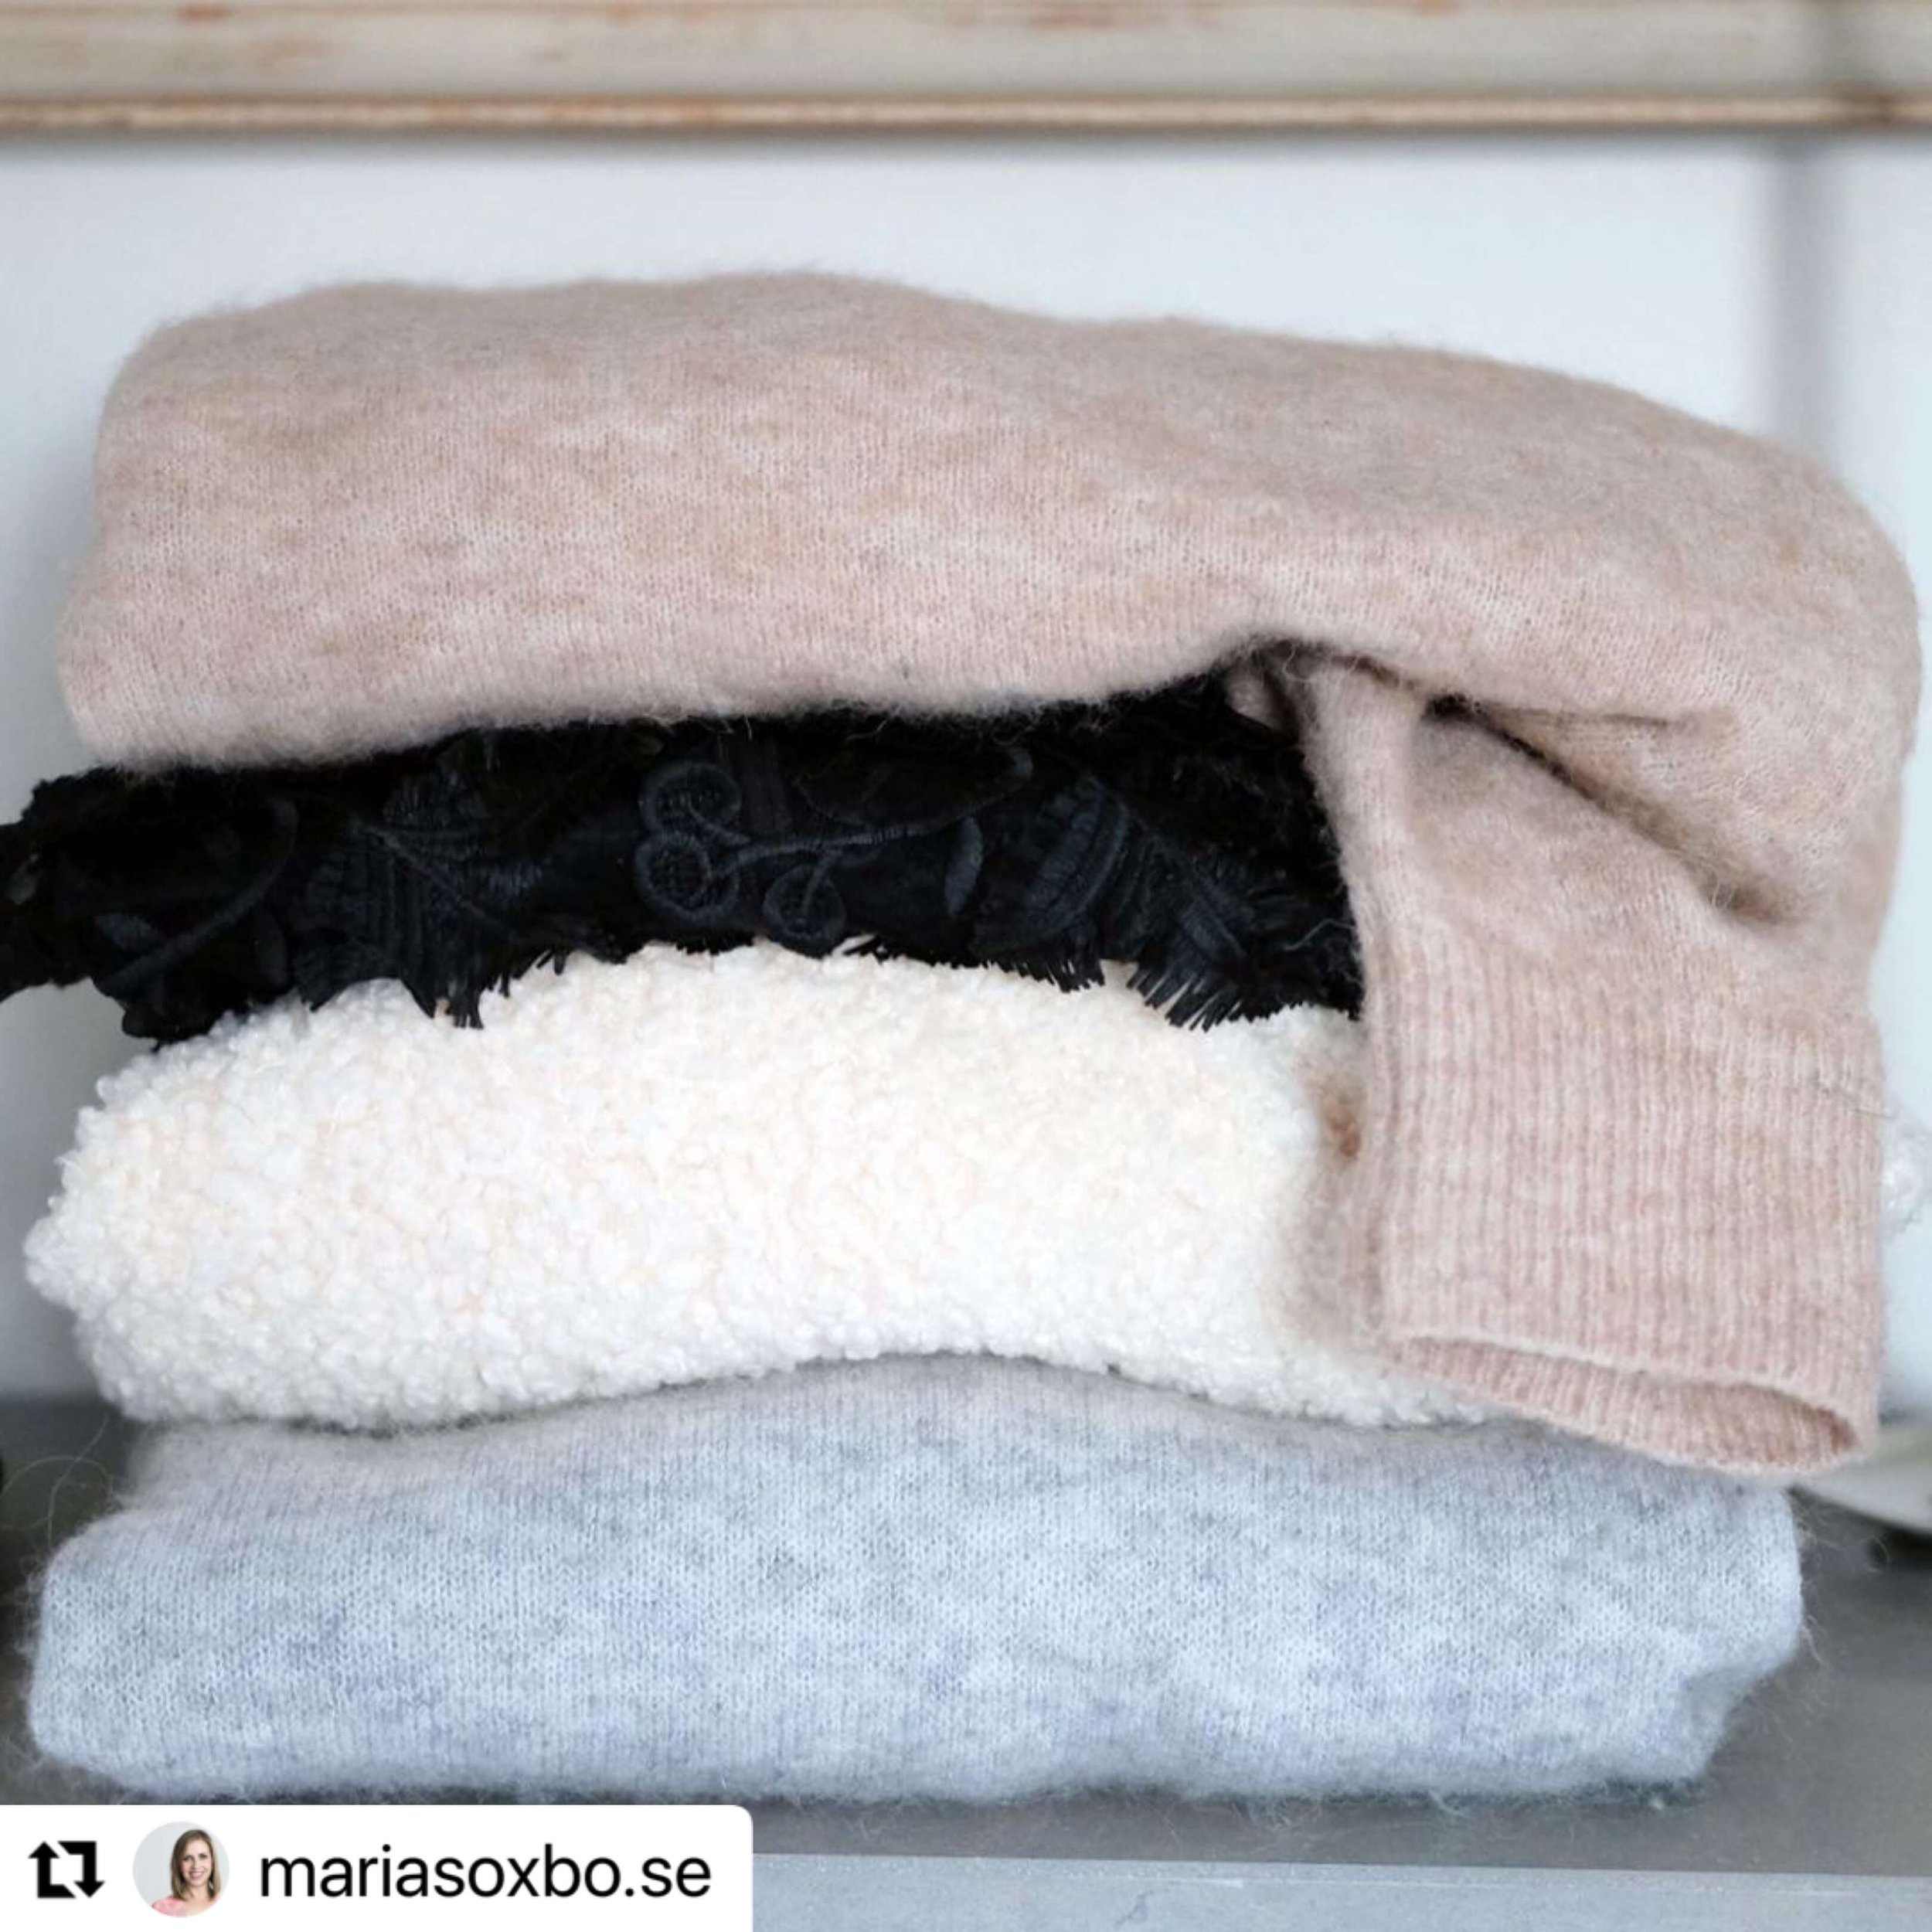  Enligt hållbar influencer Maria Soxbo använder vi i snitt nyproducerade kläder endast 7 gånger och sedan slängs de i soporna.  